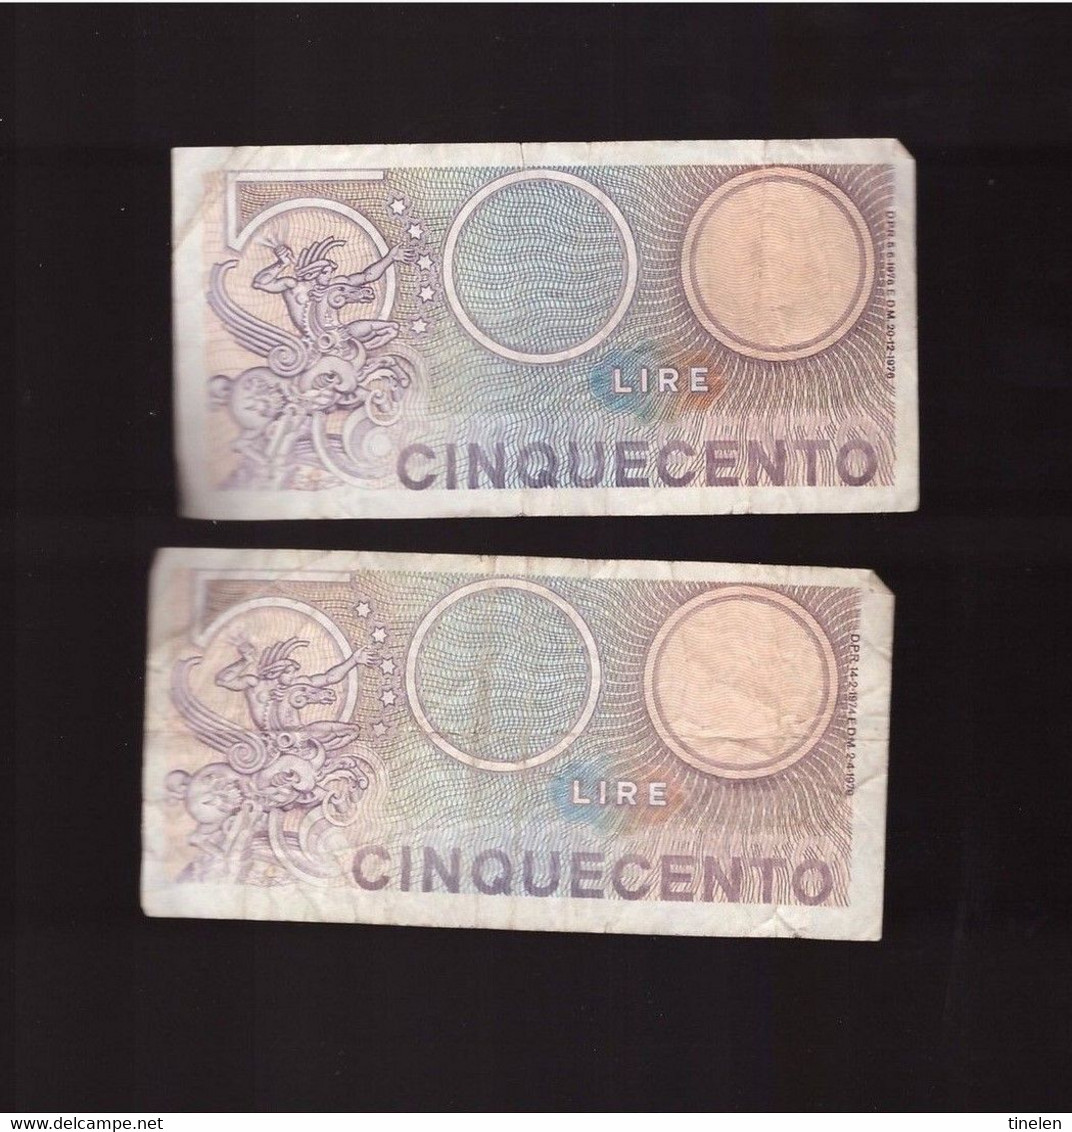 Italia - 2 Banconote Da L 500 Usate - 500 Liras